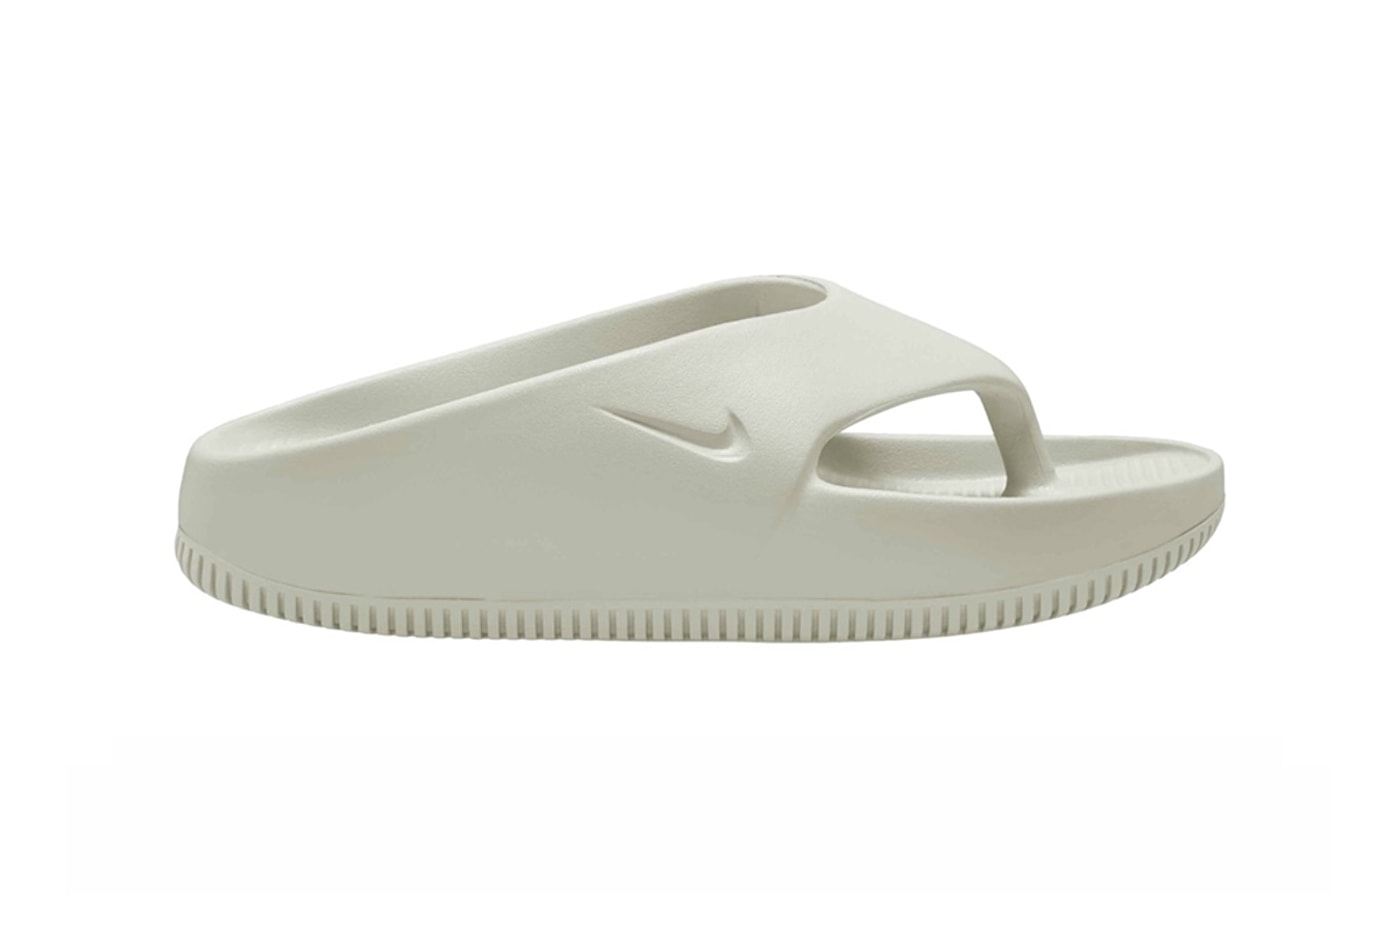 Nike Calm Flip Flop Women's First Look Release Info FD4115-003 FD4115-002 FD4115-001 Date Buy Price 